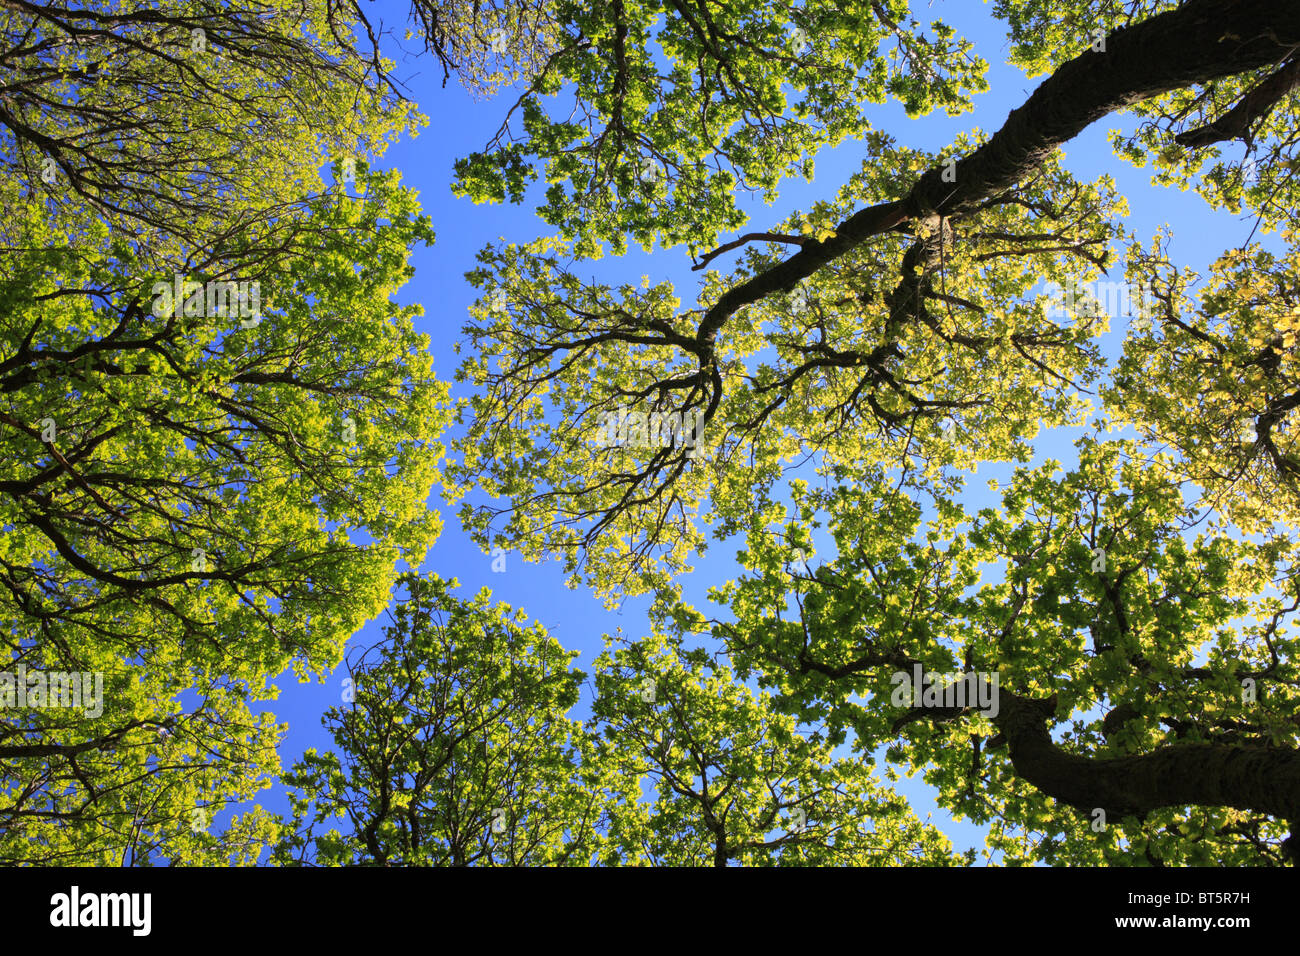 À la recherche dans la verrière de chênes sessiles (Quercus petraea) dans les forêts, au début du printemps. Powys, Pays de Galles. Banque D'Images